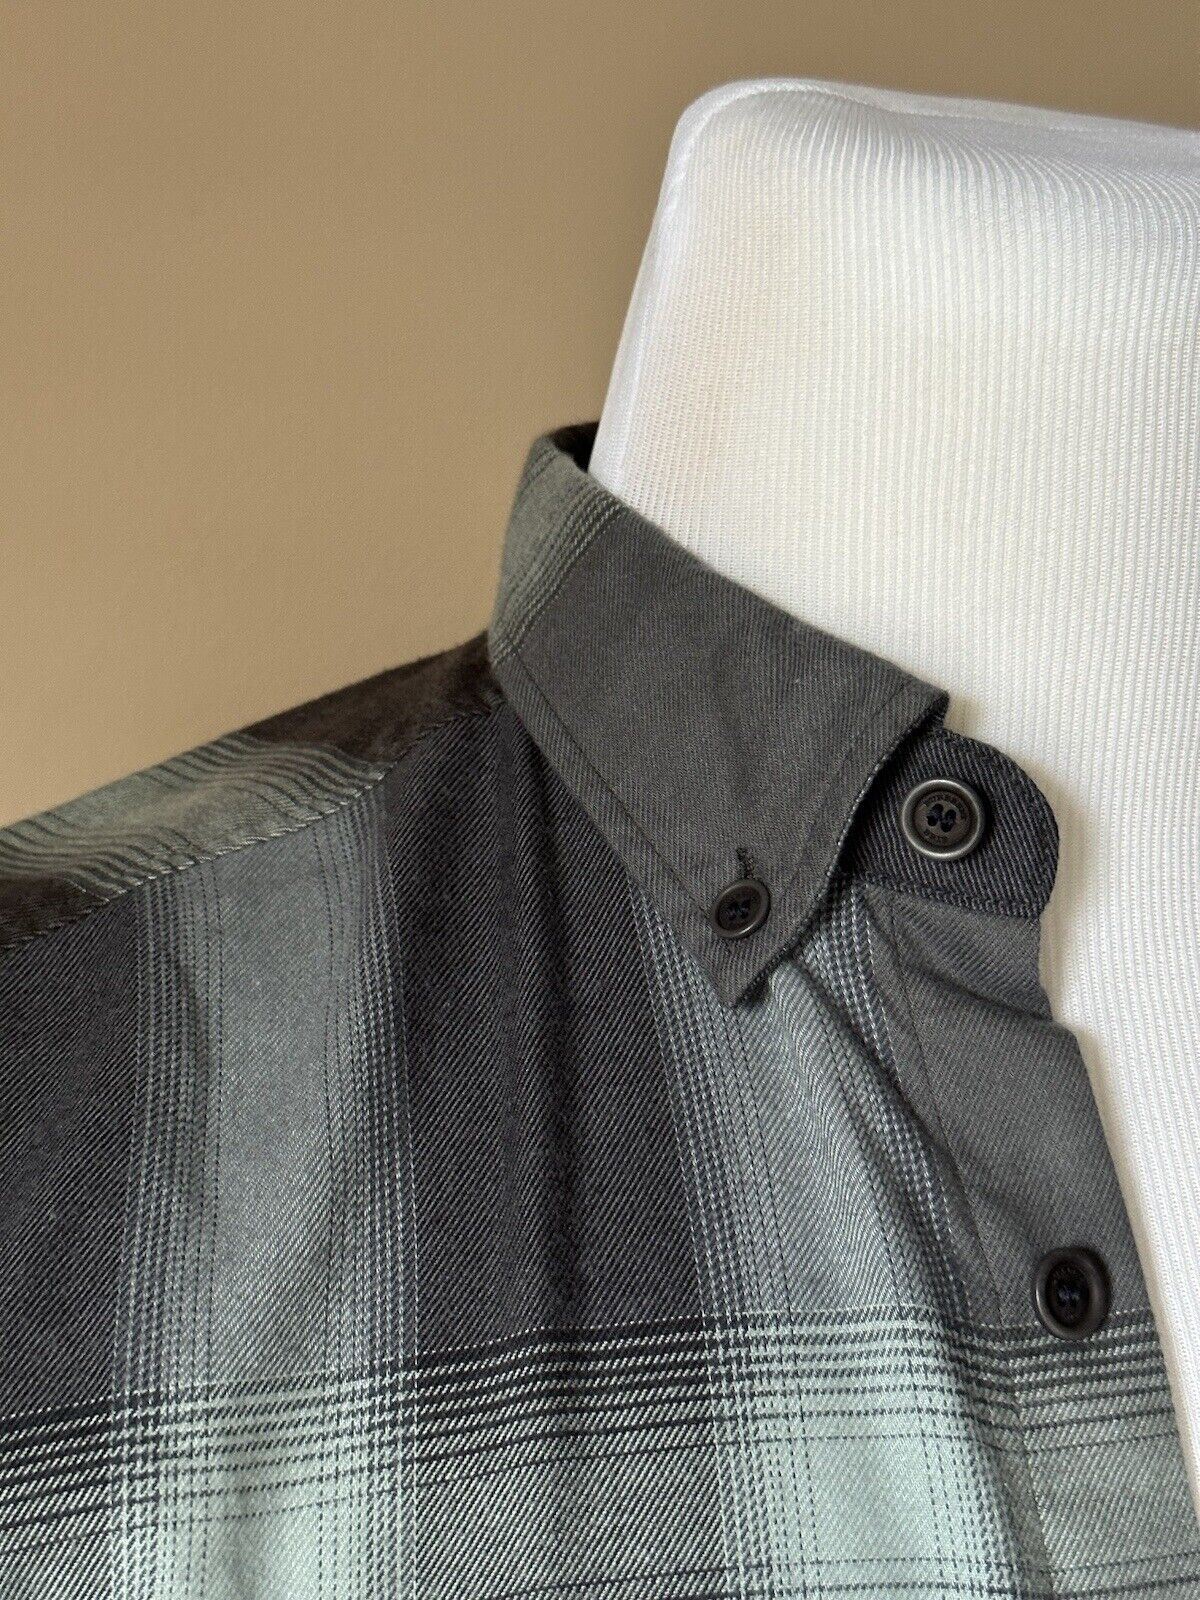 Neu mit Etikett: 295 $ Burberry Brit Herren-Button-Down-Hemd aus zinnblauer Baumwolle XS 3902560